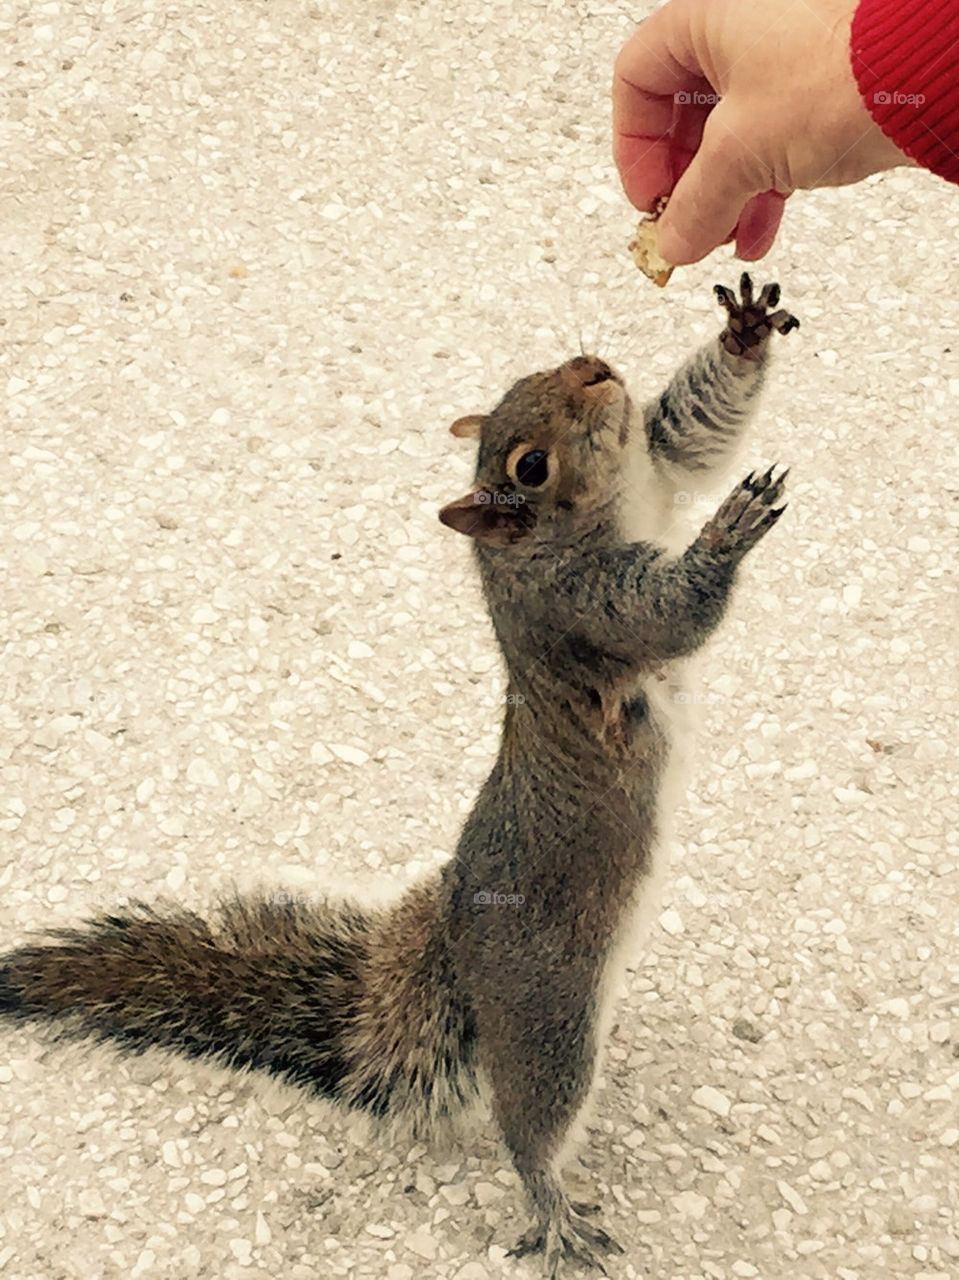 Feeding a squirrel 